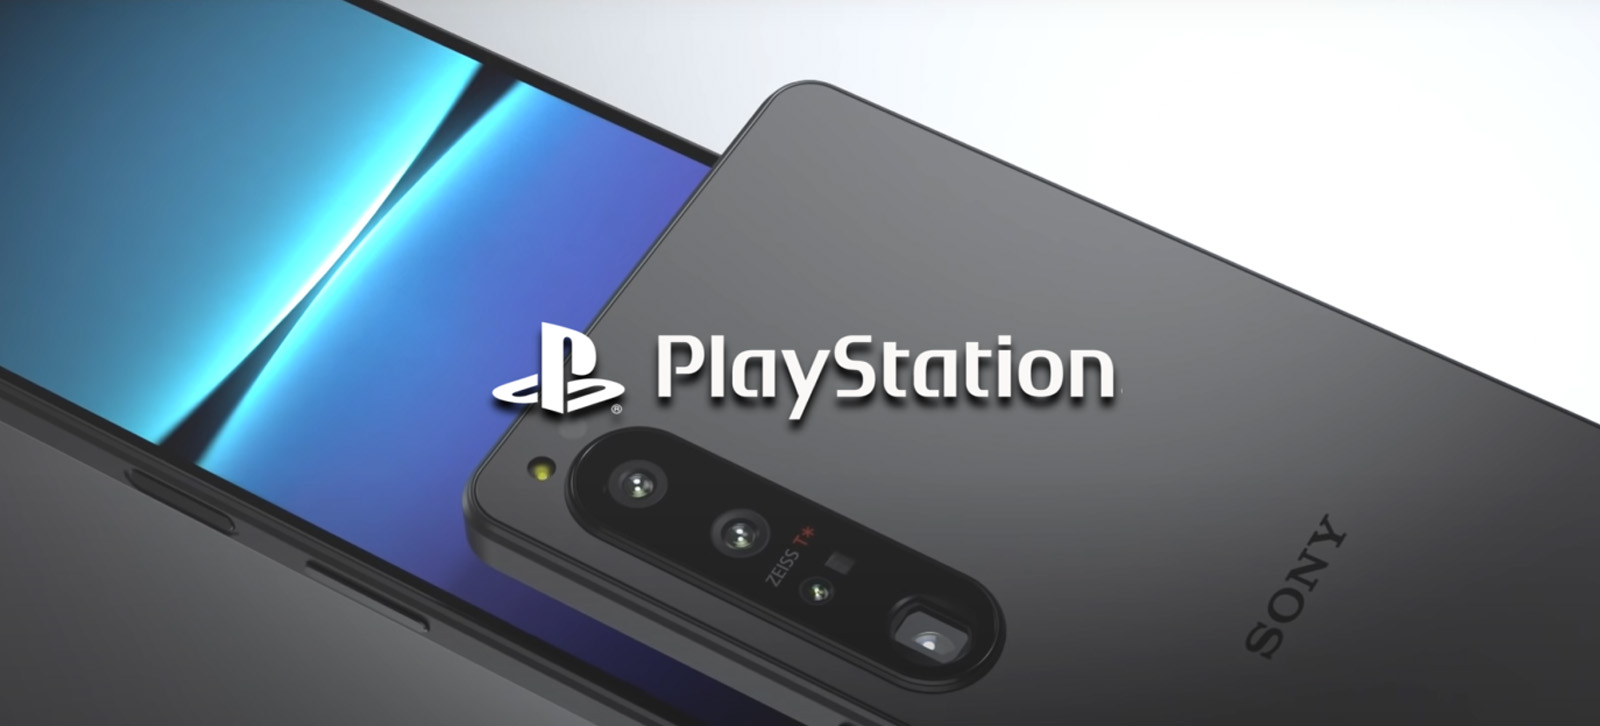 Sony còn có ý định kết nối các tựa game di động với các dịch vụ PlayStation hiện có, tạo nên một hệ sinh thái game đồng nhất và liền mạch cho người dùng (Ảnh: Internet)